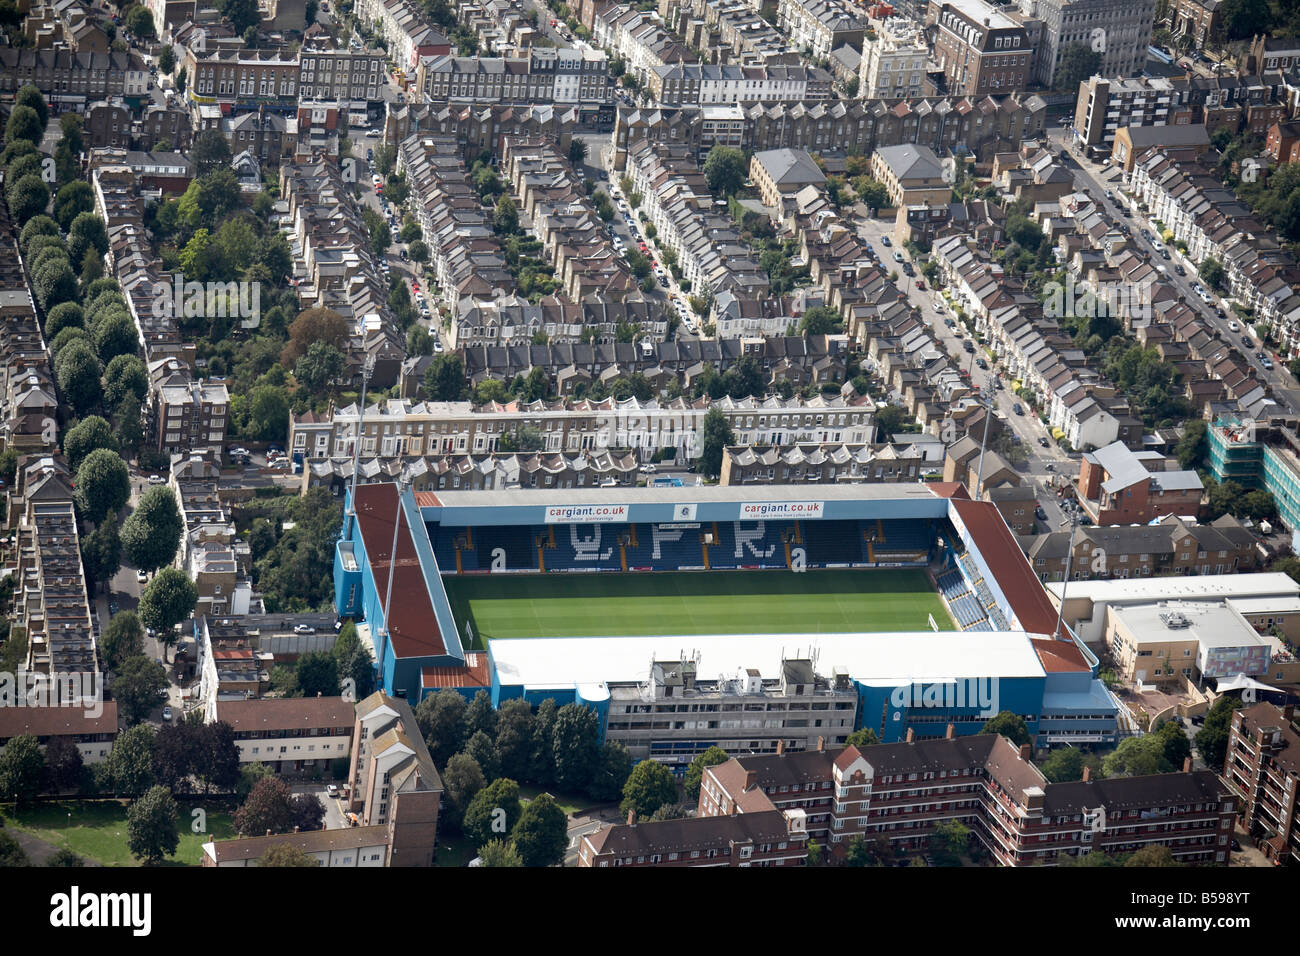 Vue aérienne au sud-ouest de Queens Park Rangers Football Club Parc 75015 maisons de banlieue Shepherd Bush s W12 London UK Banque D'Images